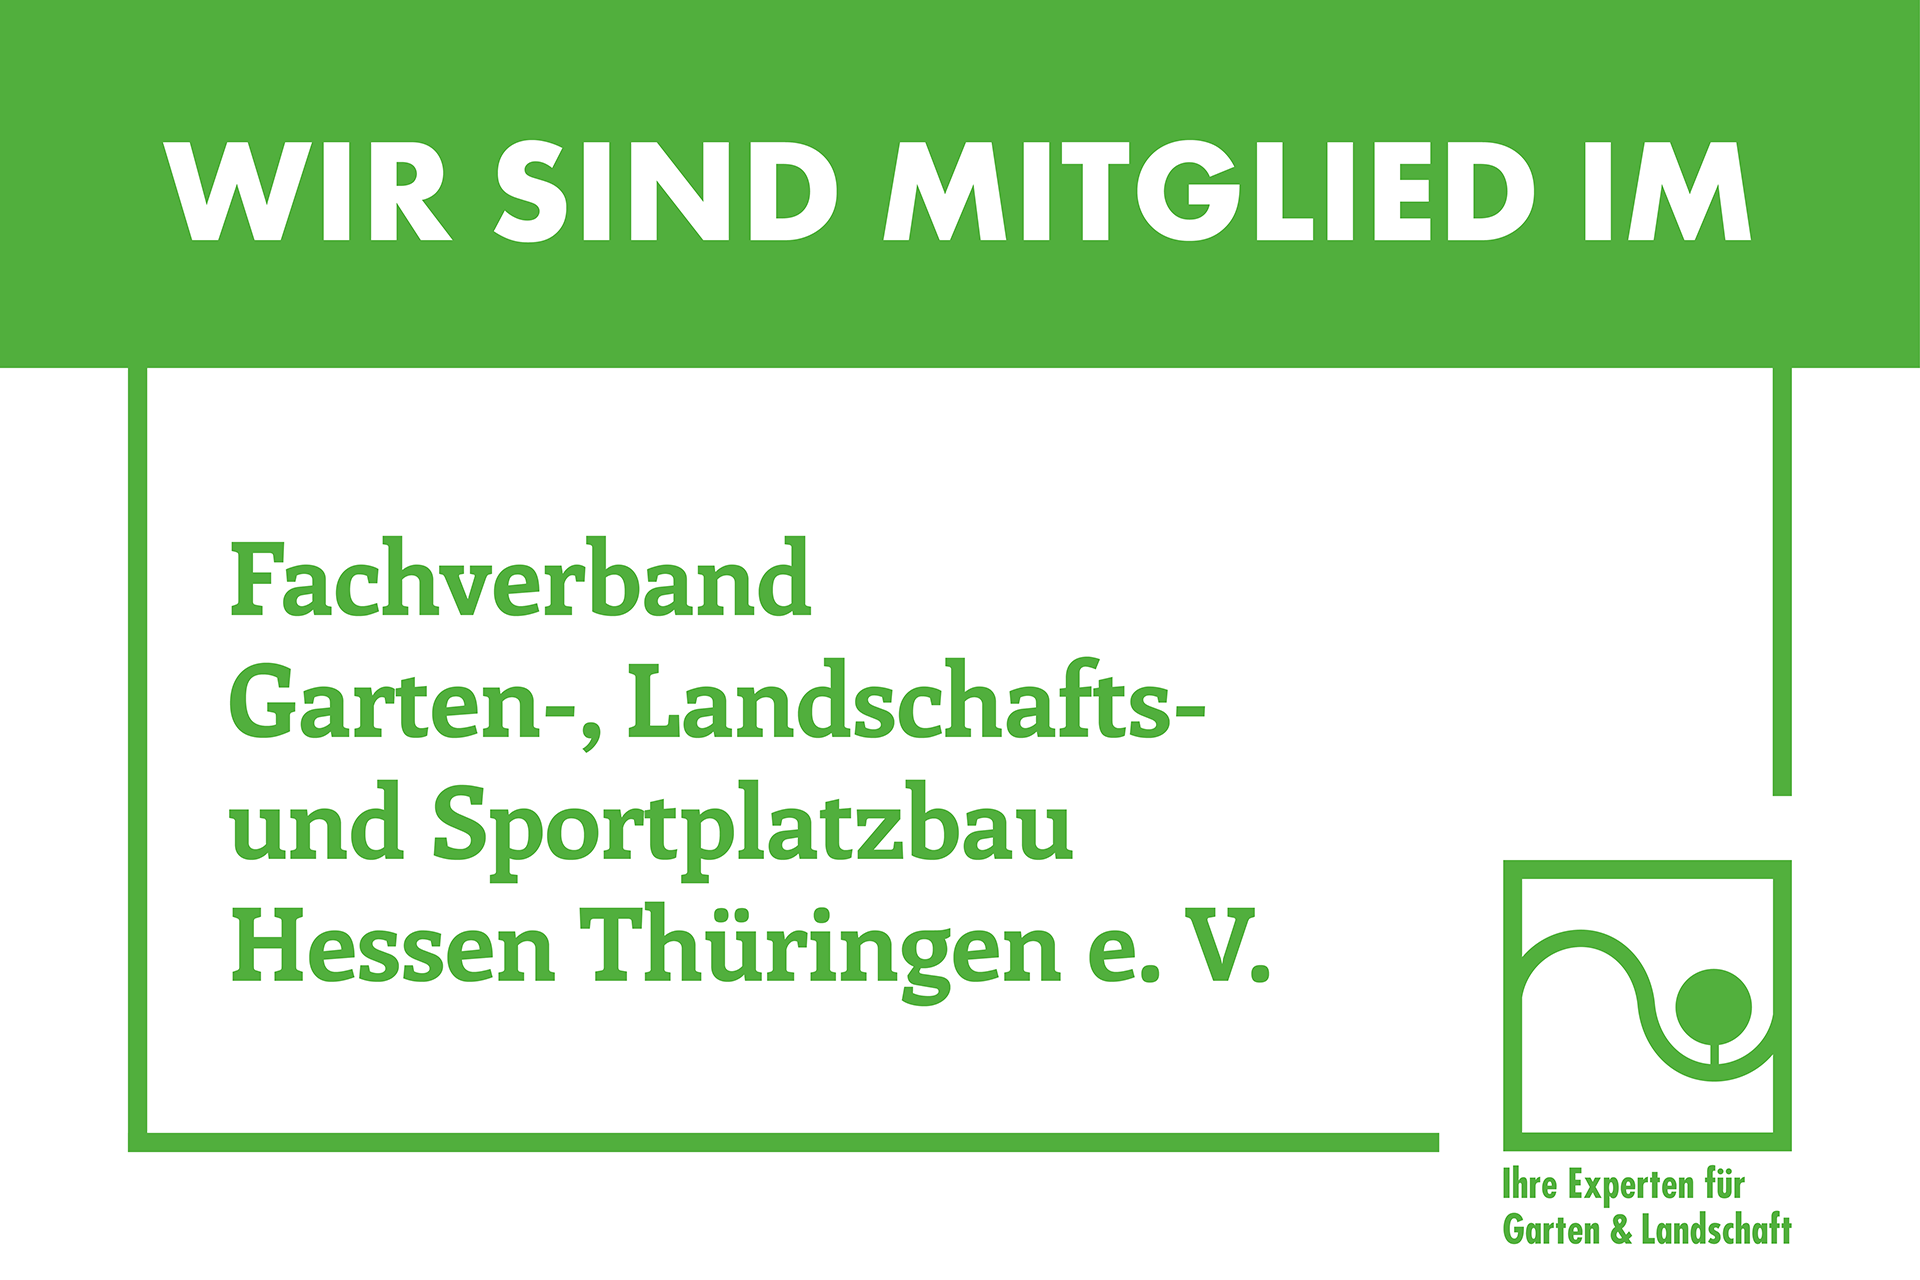 Fachverband Garten, - Landschafts- und Sportplatzbau Hessen Thüringen e. V.